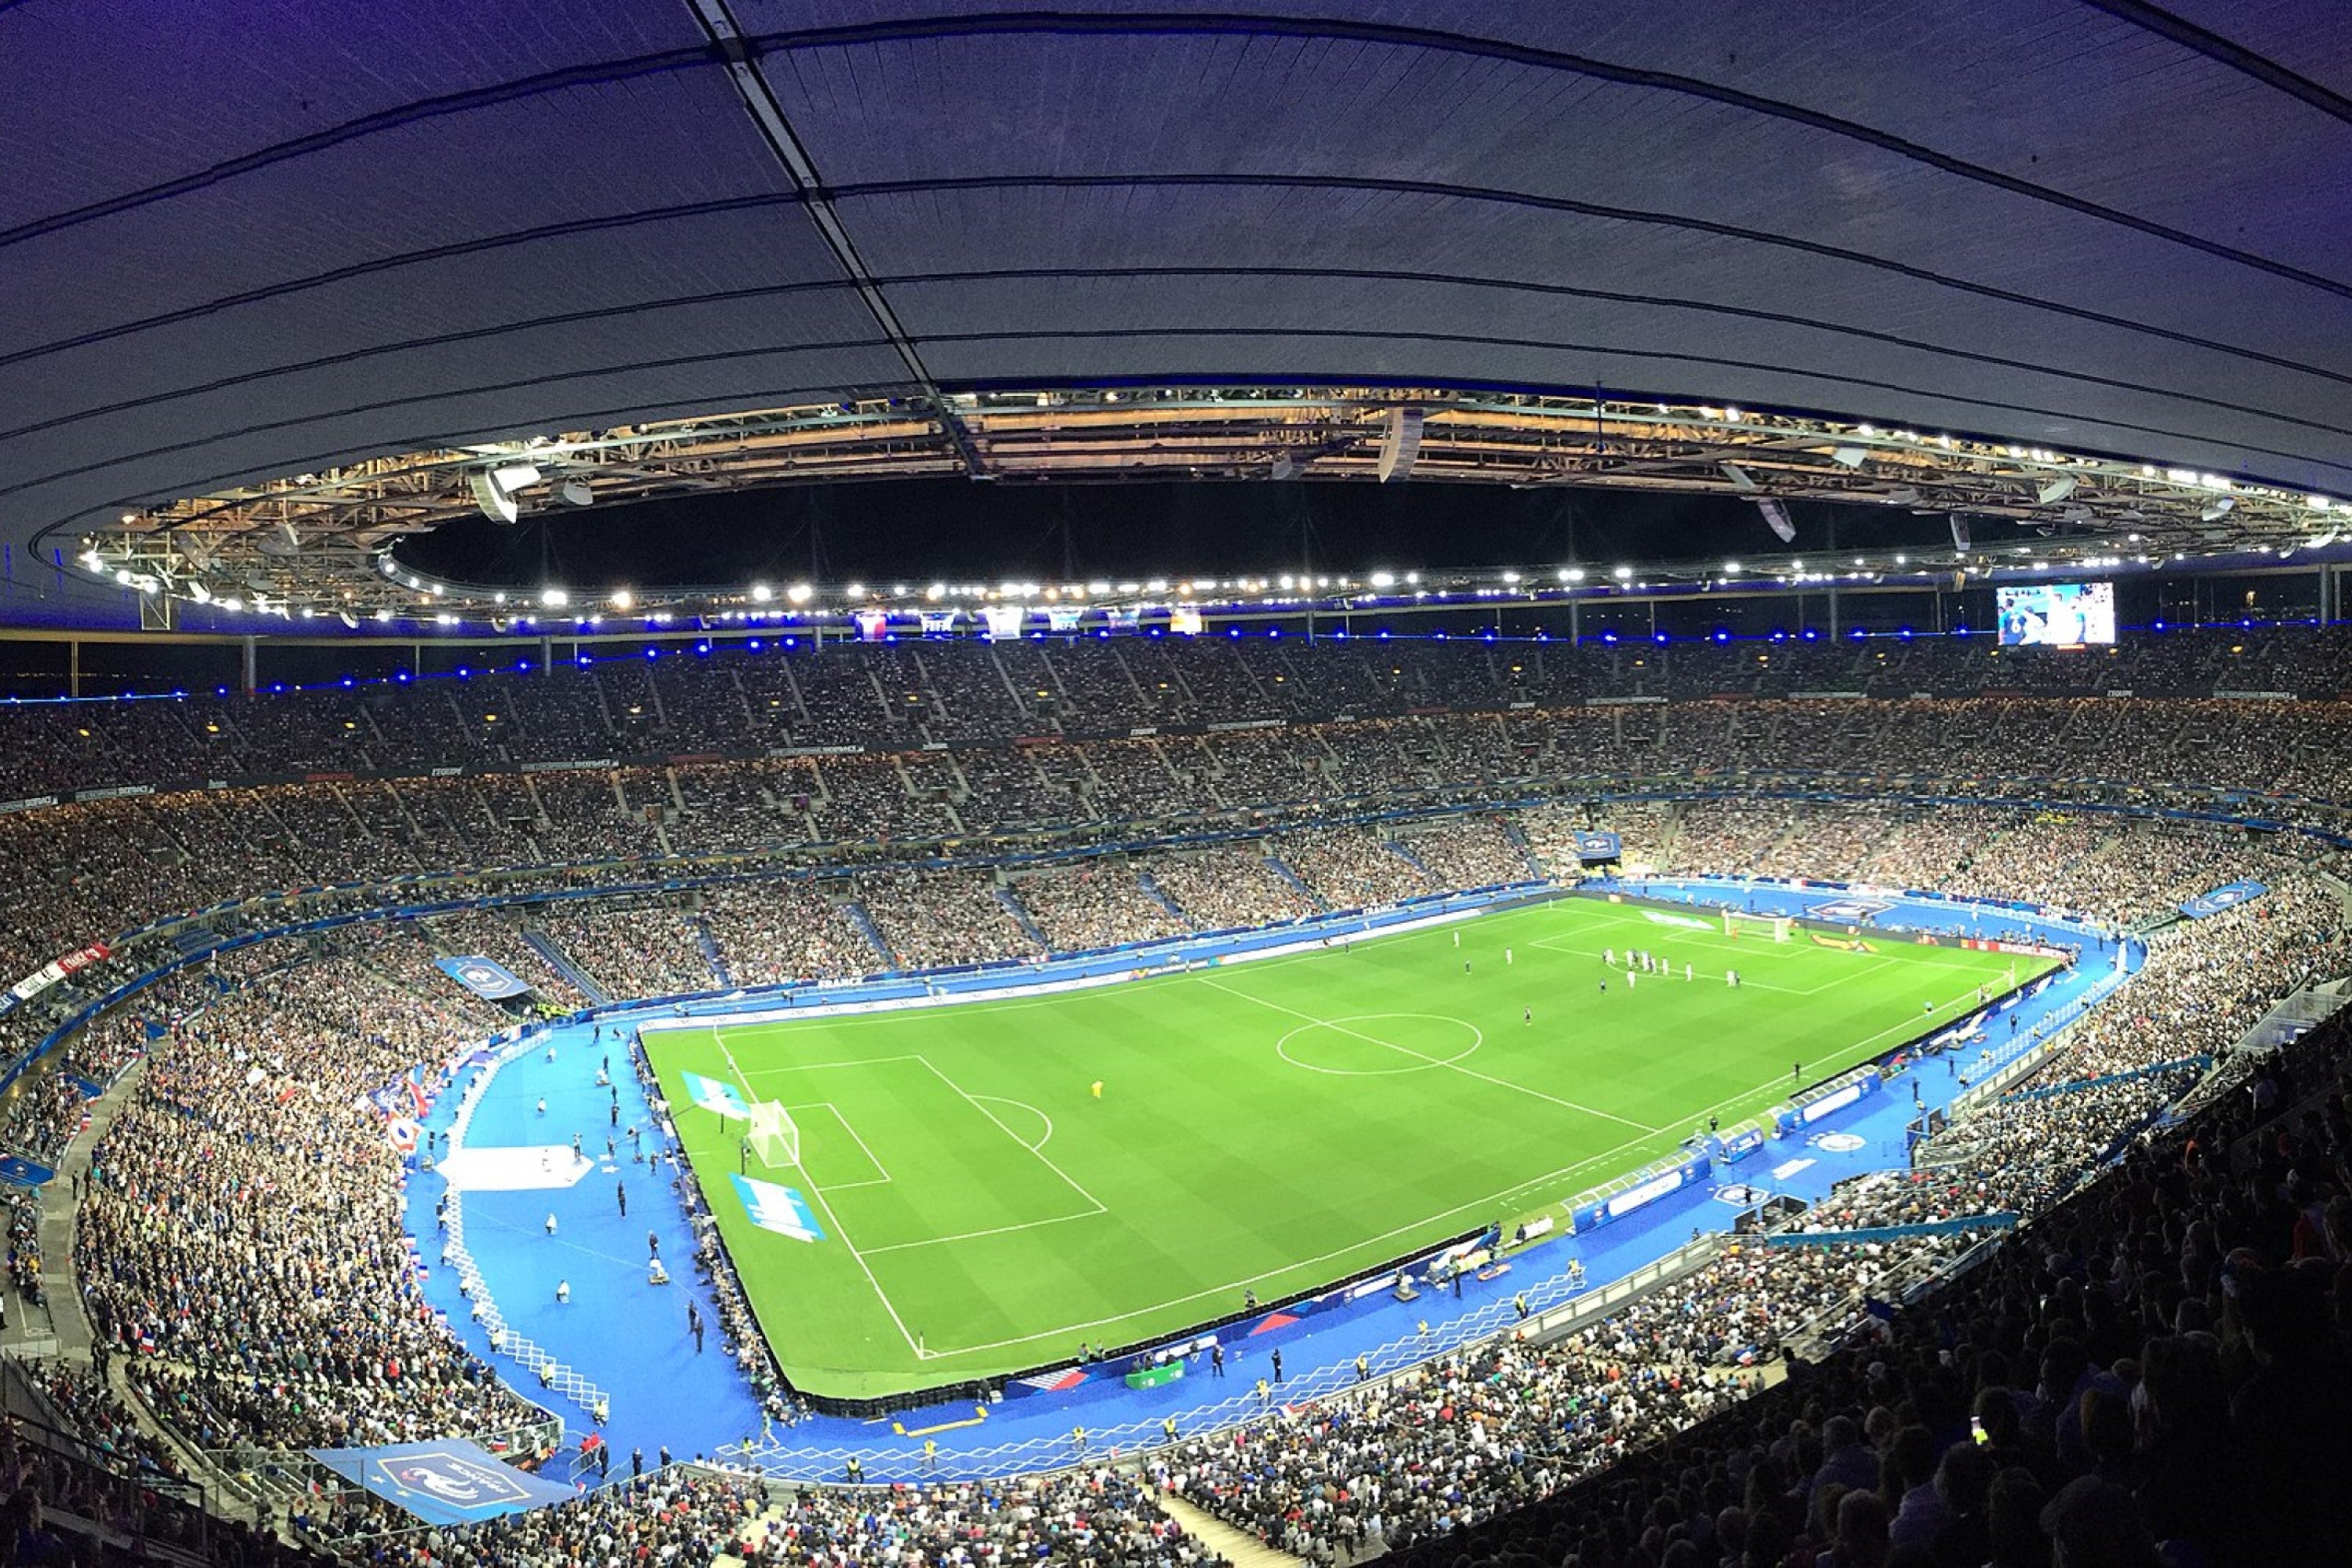 法兰西体育场将举办 2022 年欧洲冠军联赛决赛